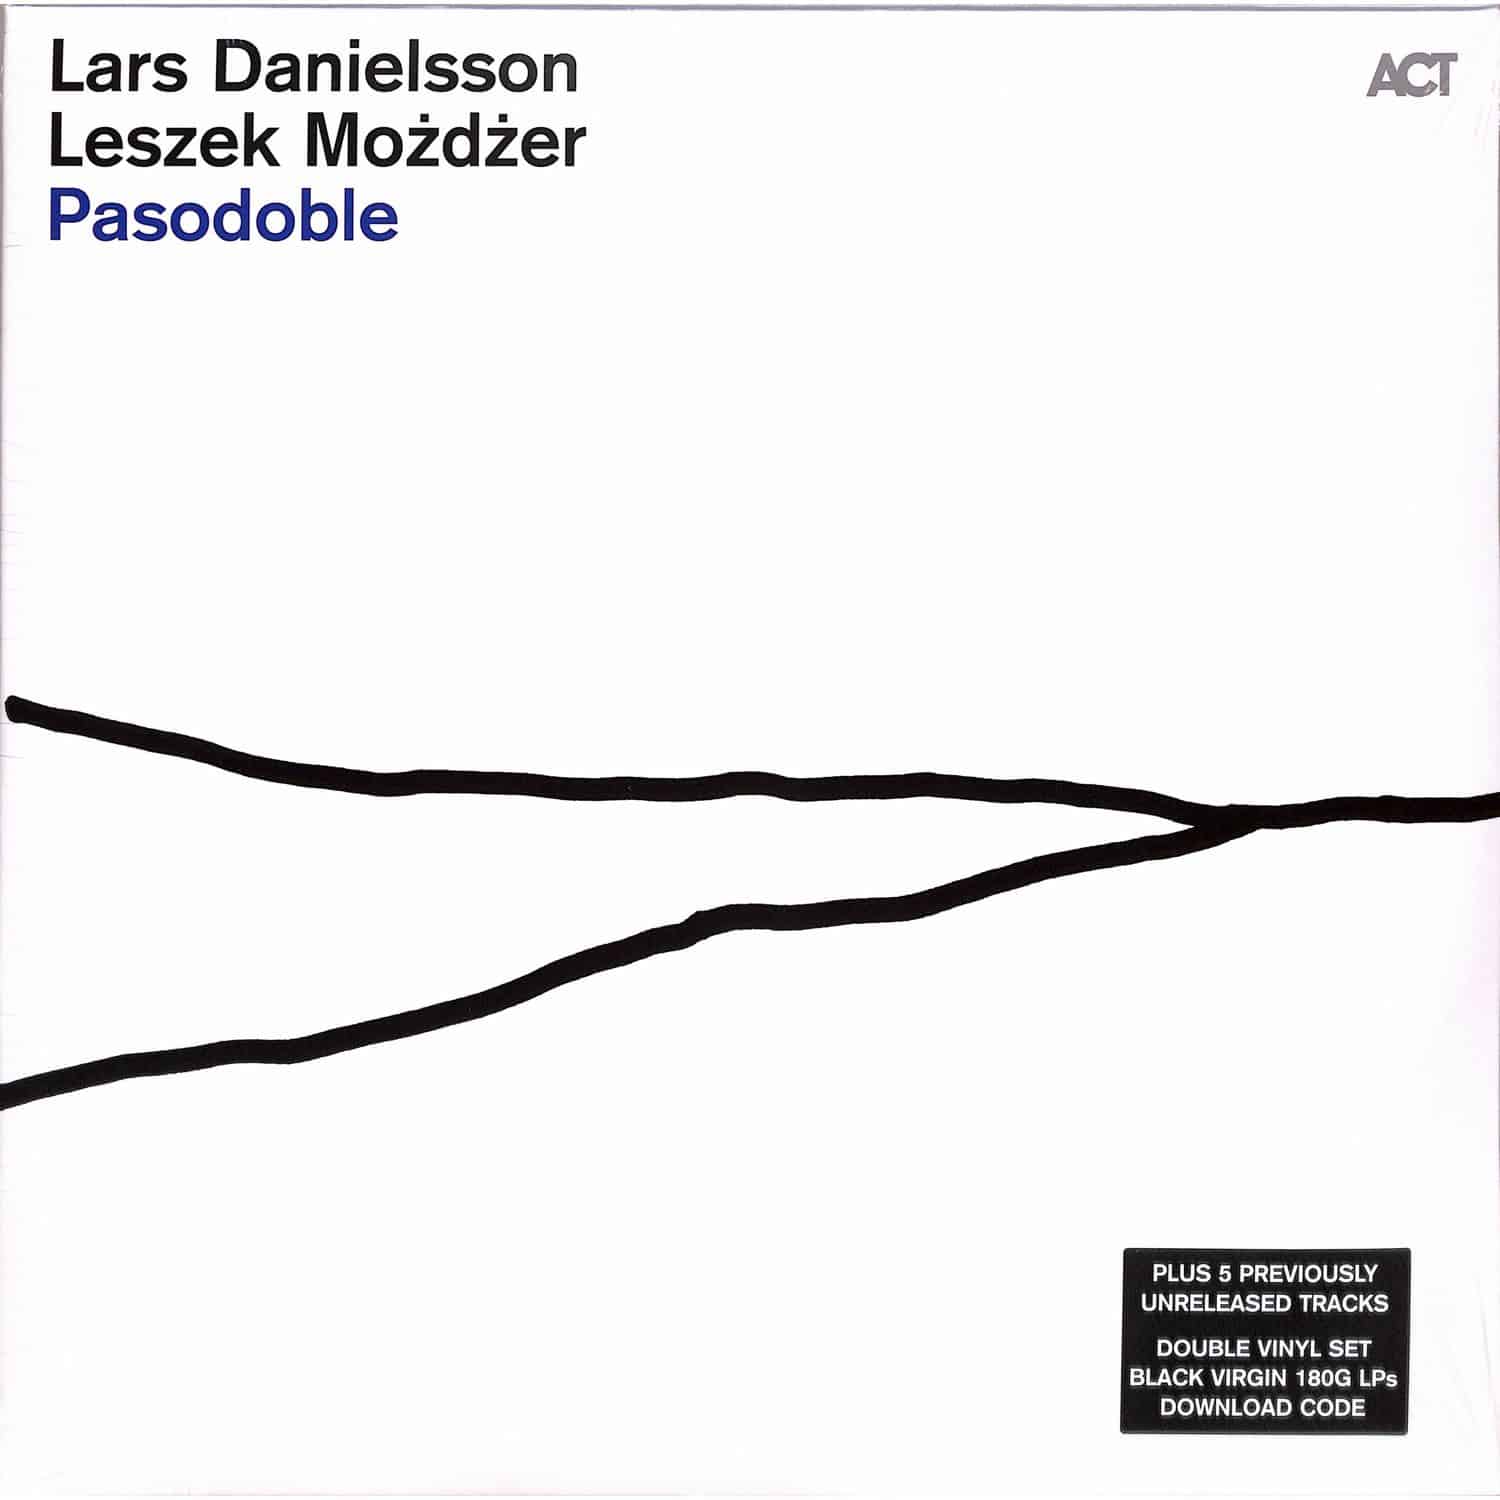 Lars Danielsson / Leszek Mozdzer - PASODOBLE 